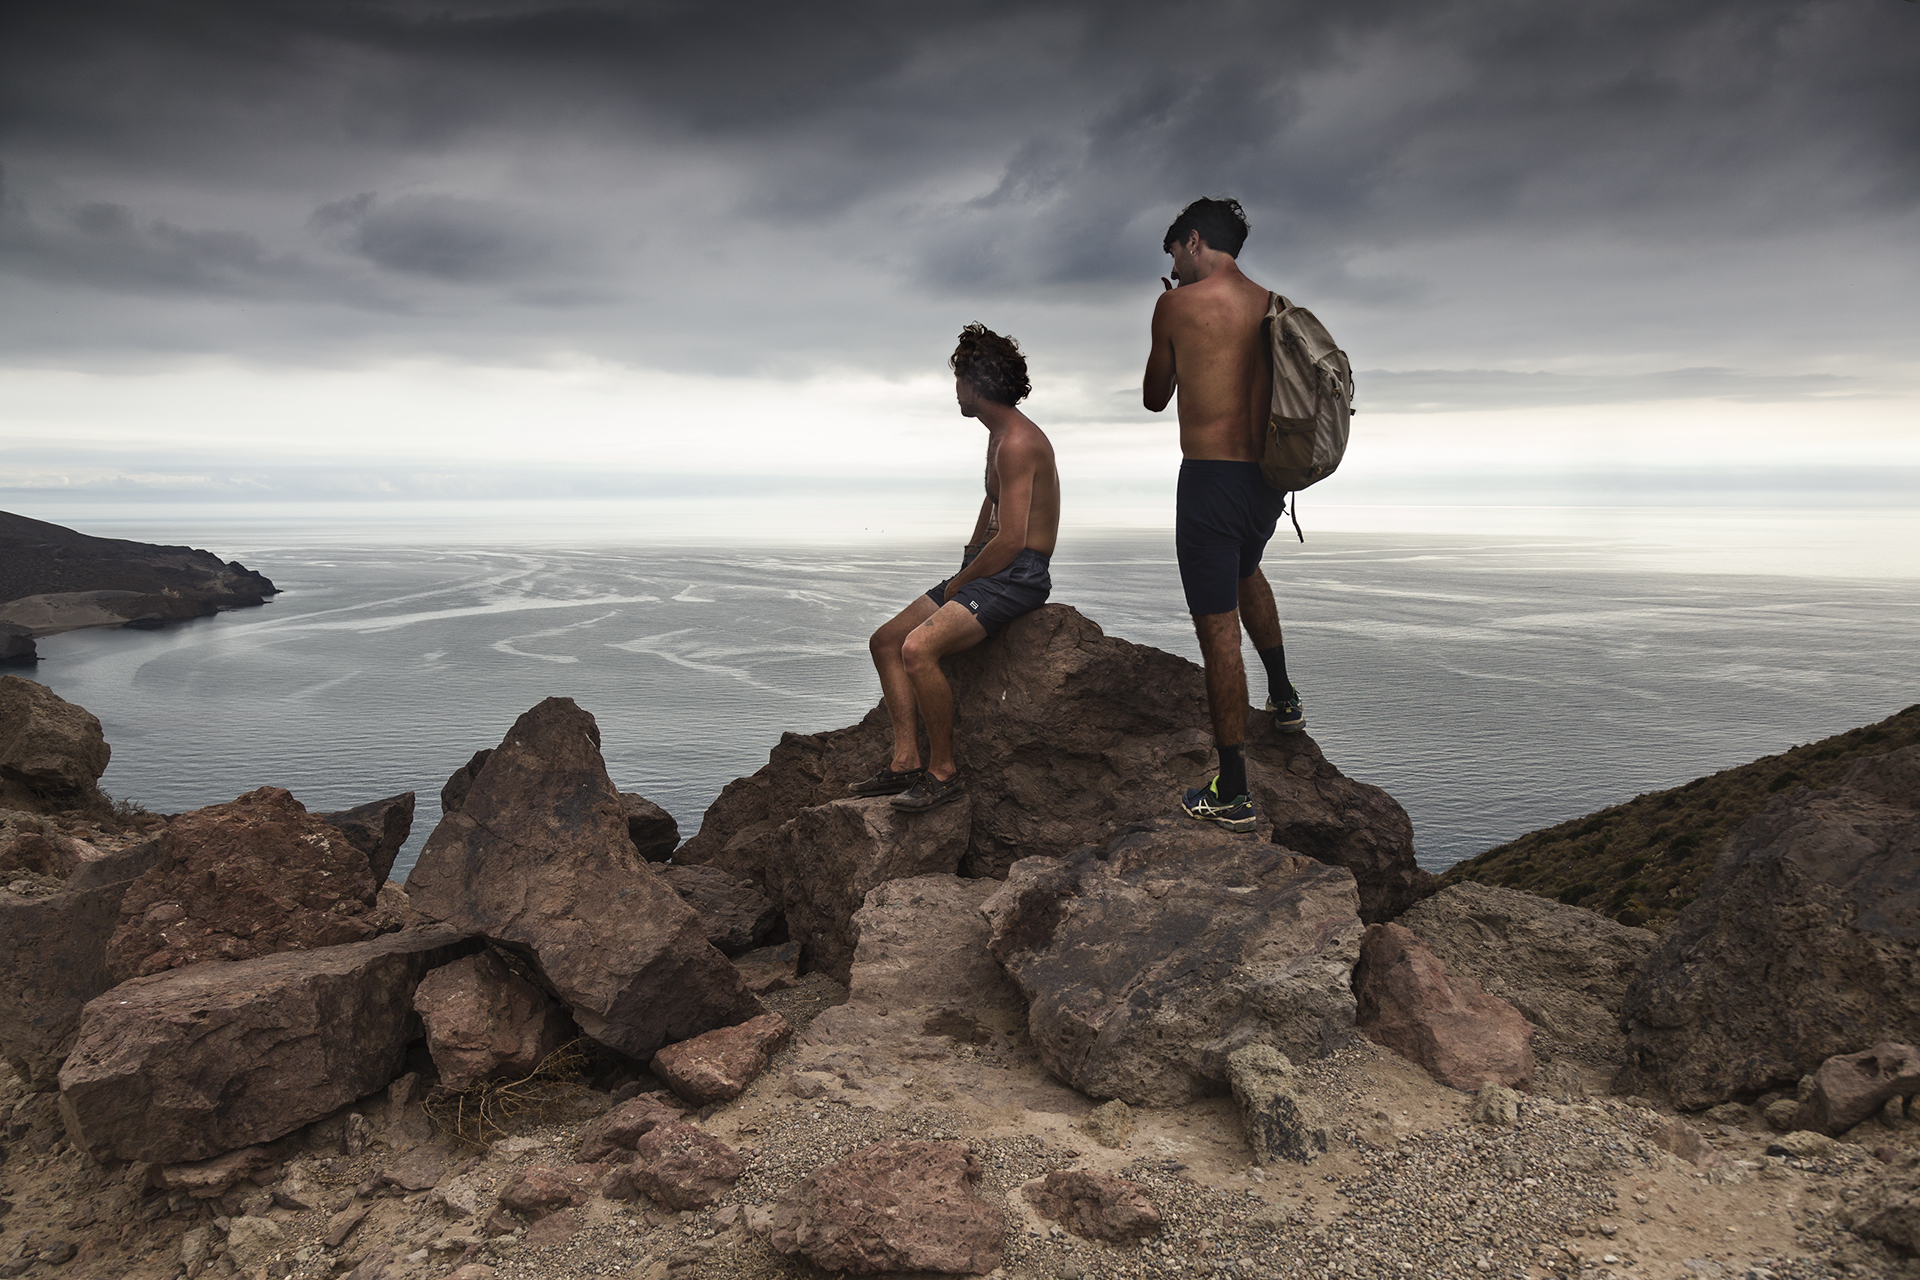 Dos amigos (Cabo de Gata, 2020)